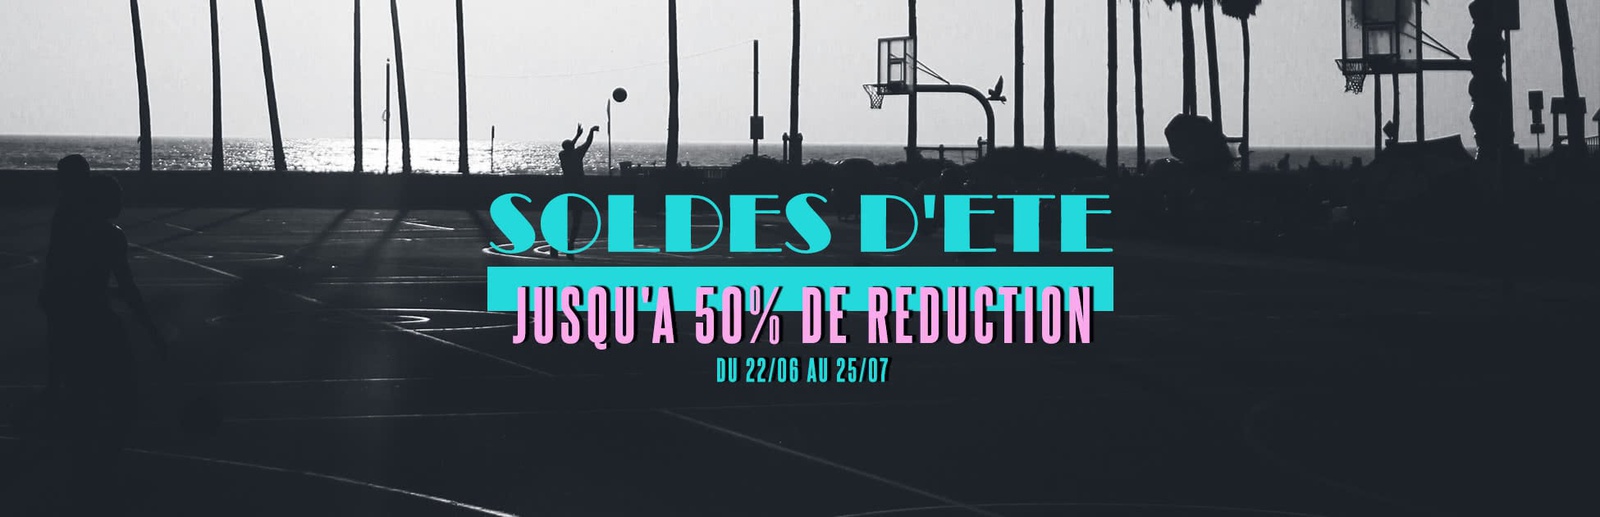 SOLDES DETE - JUSQU'A 50% DE REDUCTION